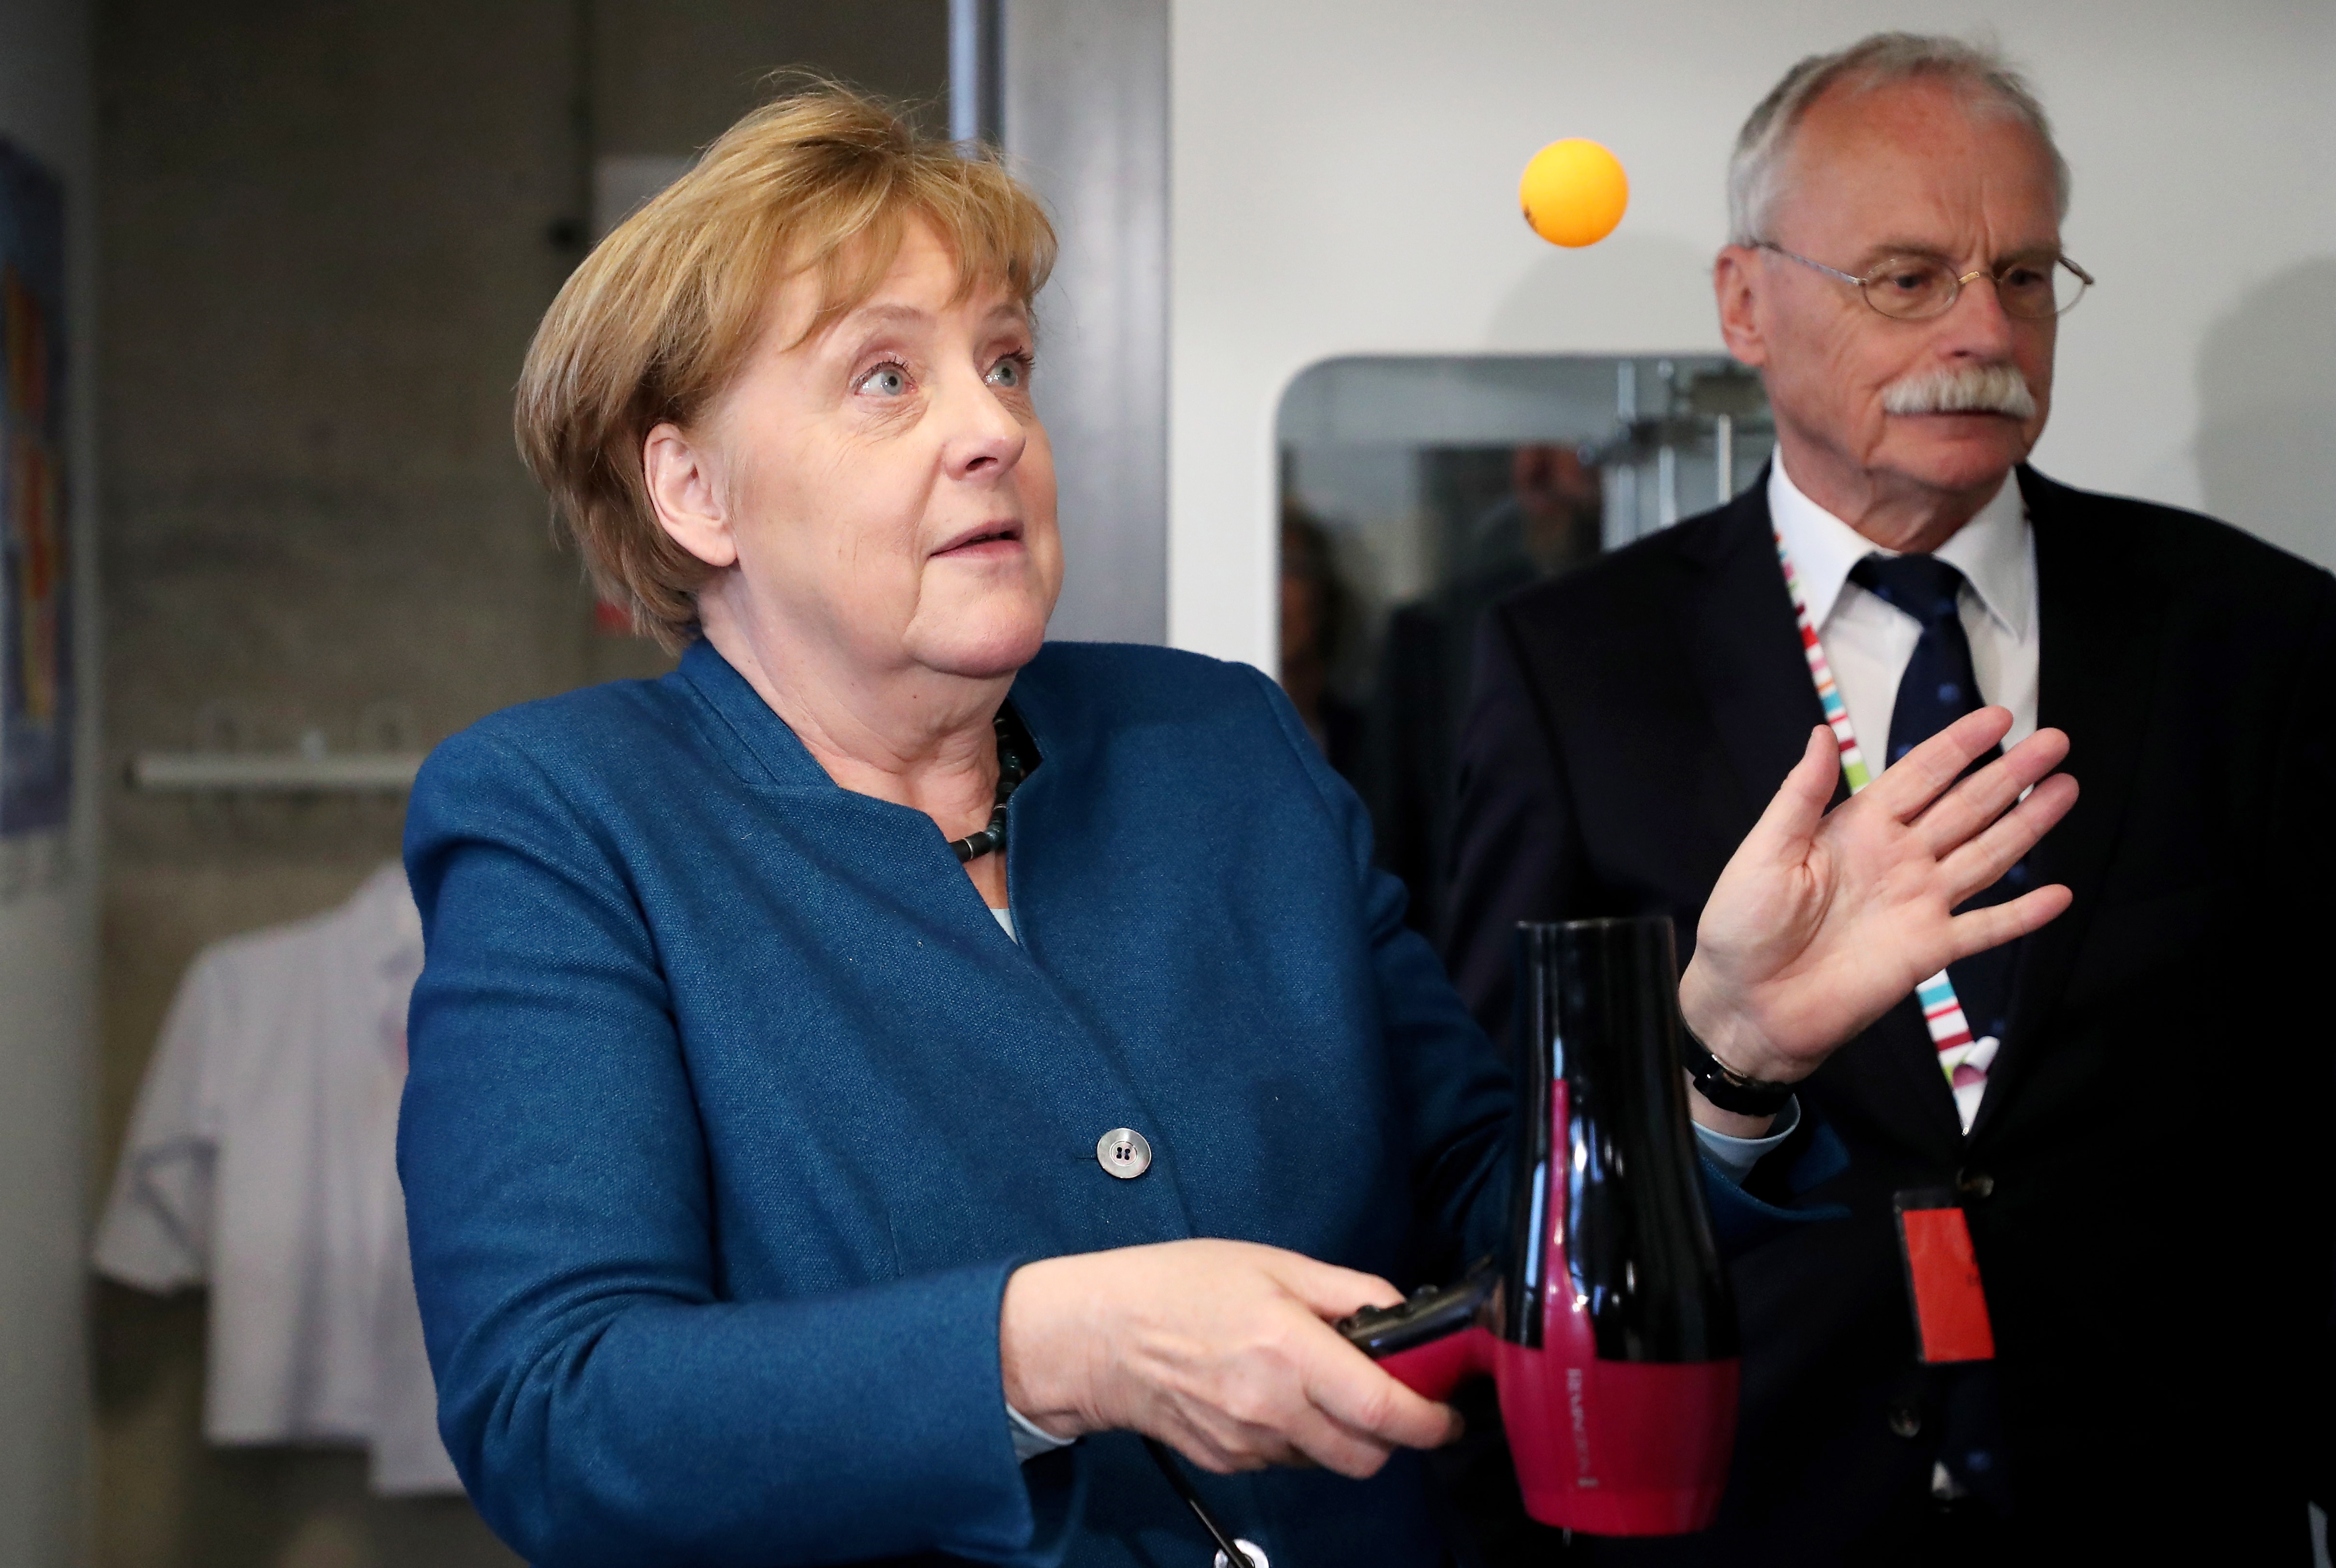 3 德国总理默克尔造访一大学 做实验惊出表情包